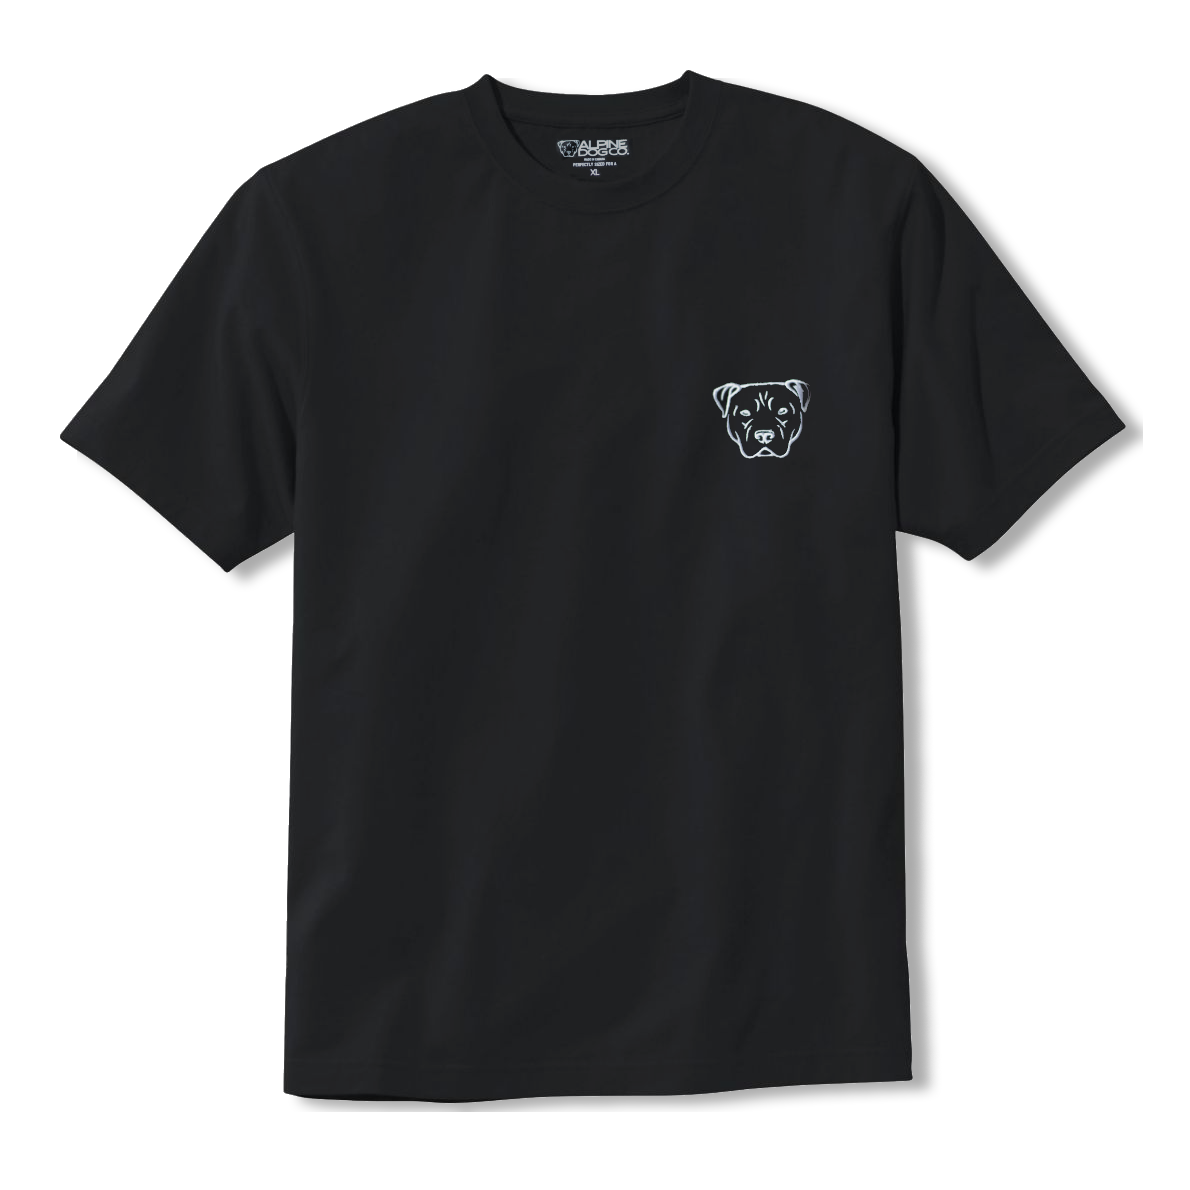 Anti Dog Park Dog Park Club - Black T-Shirt